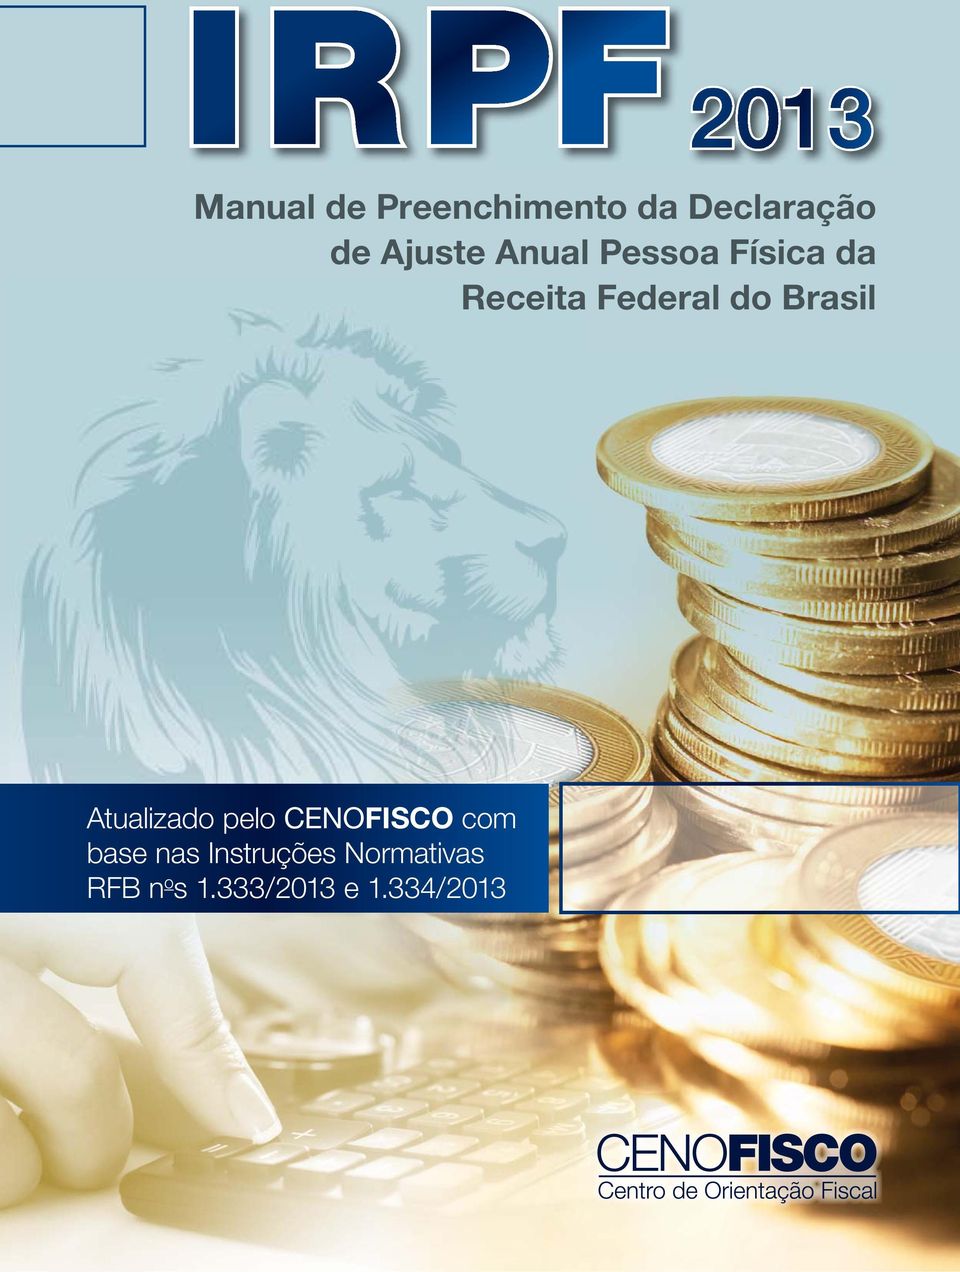 Brasil Atualizado pelo CENOFISCO com base nas